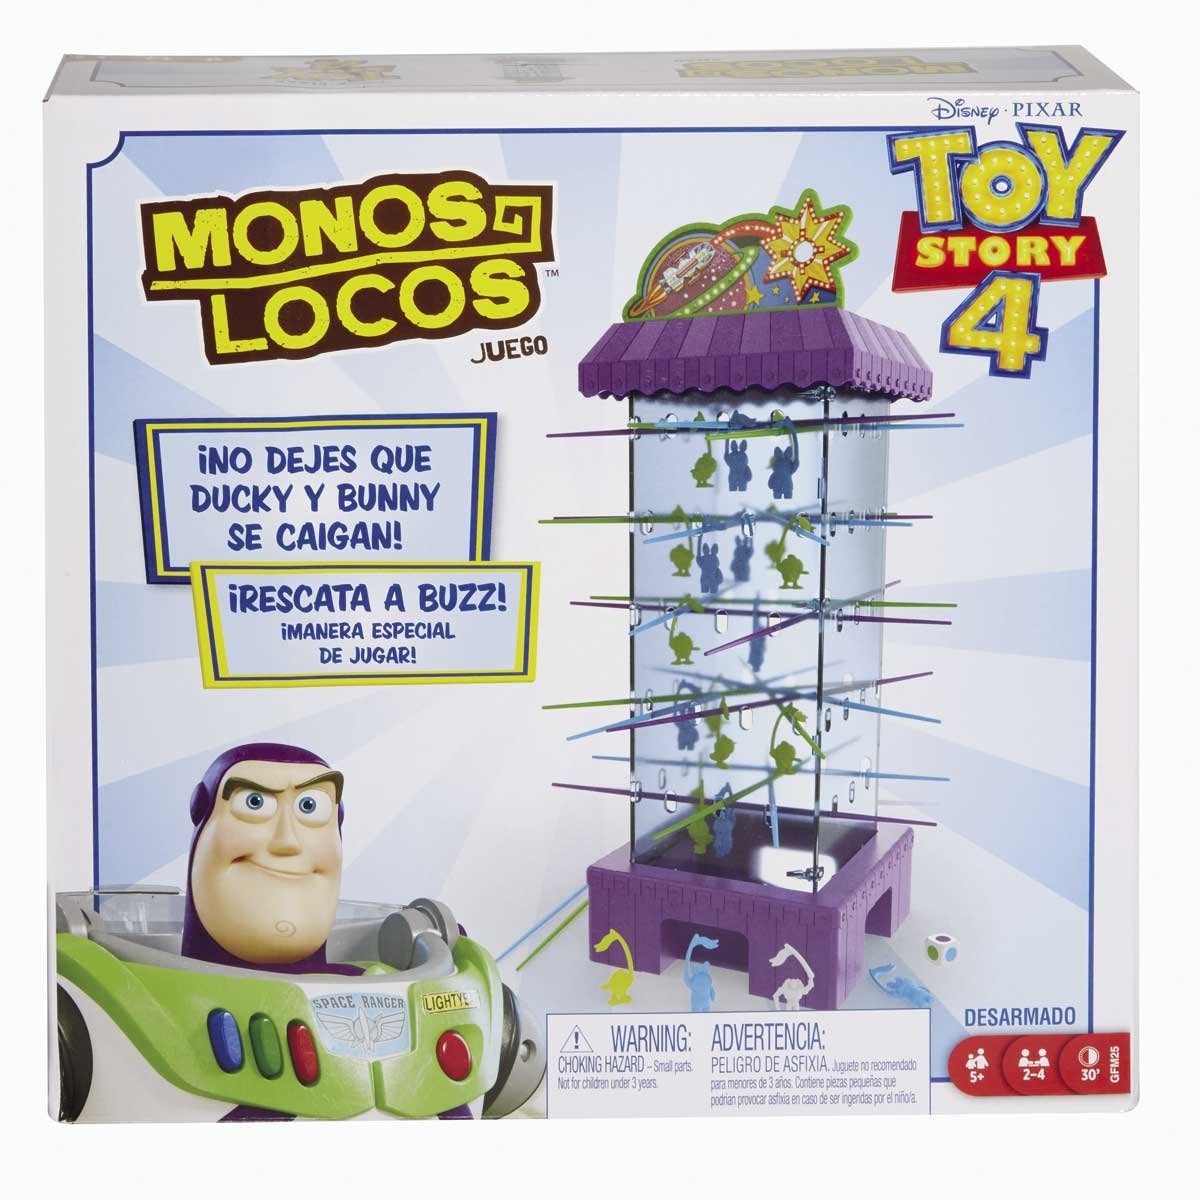 Monos Locos Toy Story 4 Mattel Juego De Mesa Sears